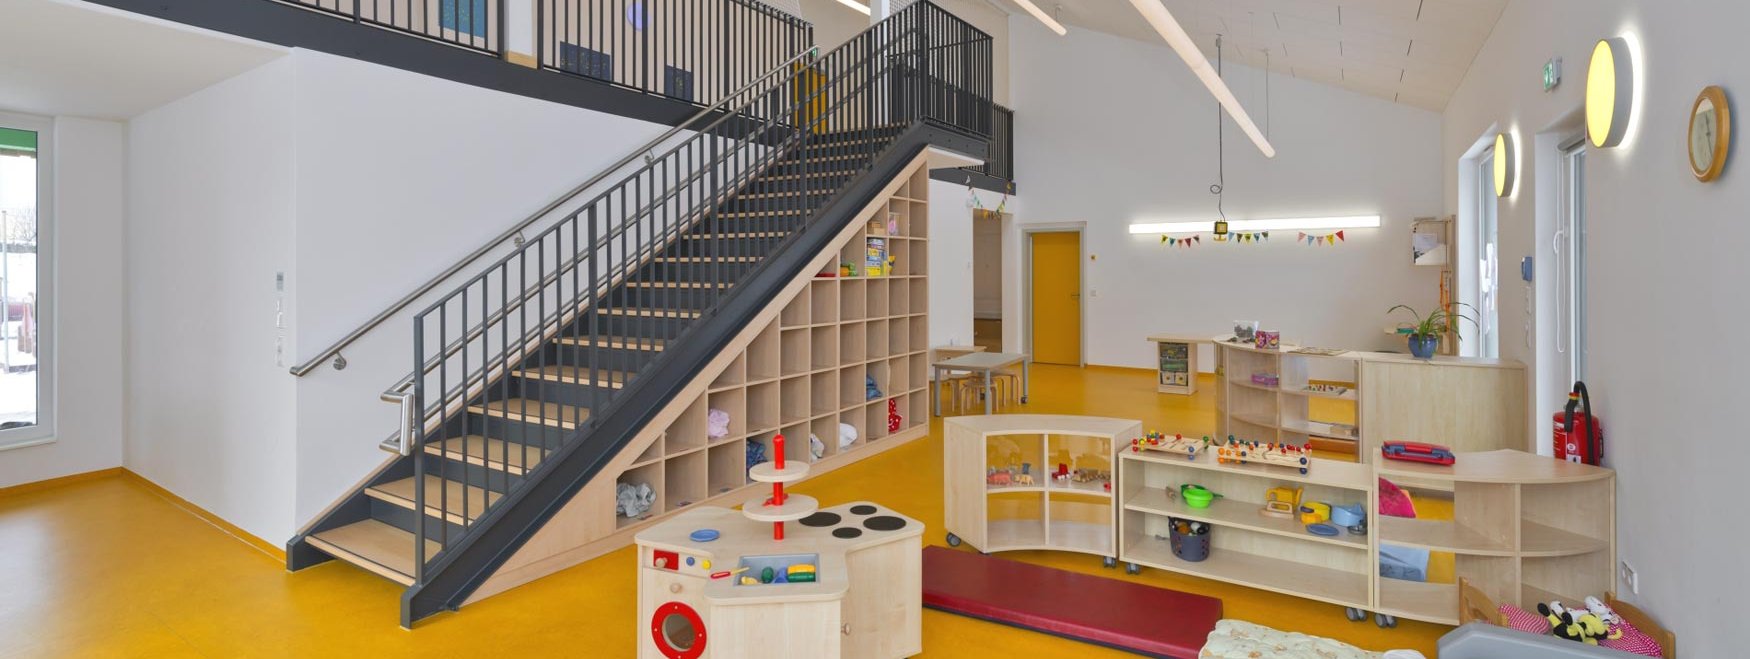 Referenz - Kindergarten bauen